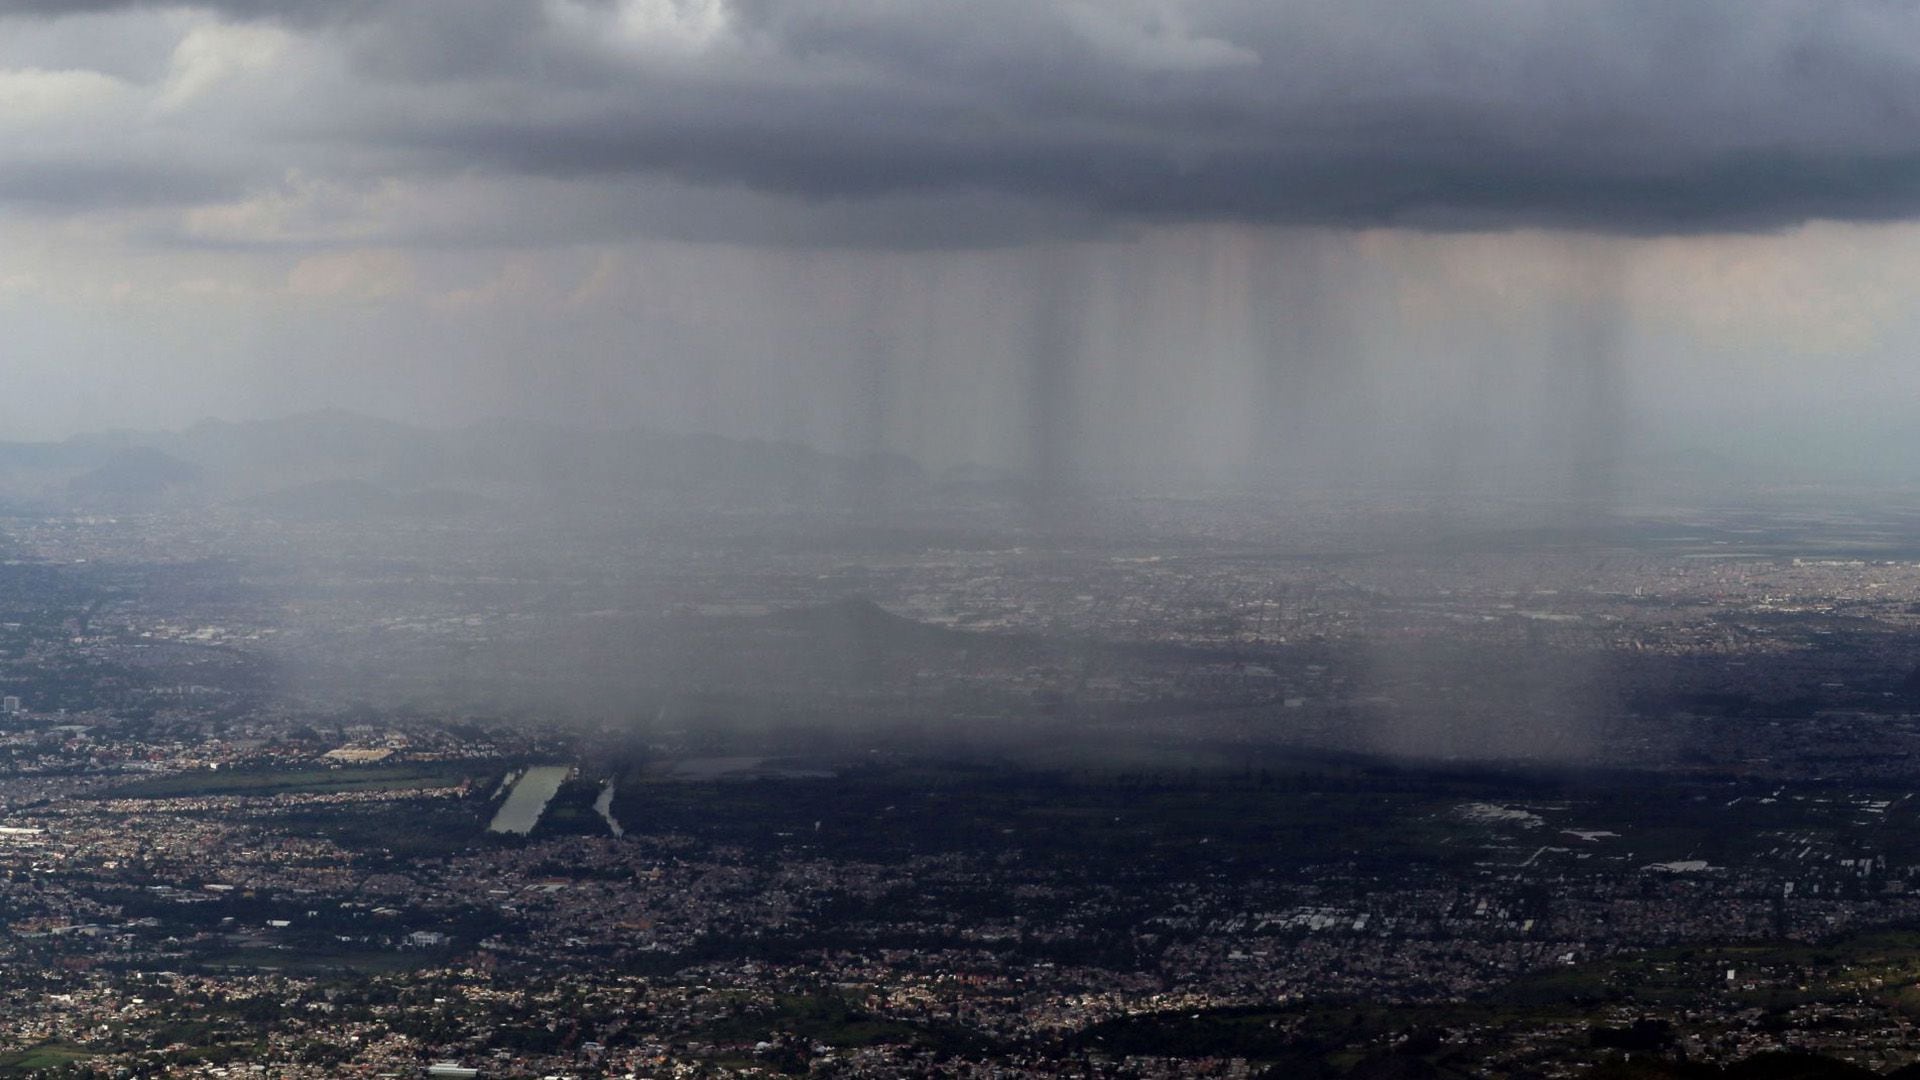 Las bandas nubosas provocarán intensas lluvias en el occidente y centro del país. Foto:
Cuartoscuro